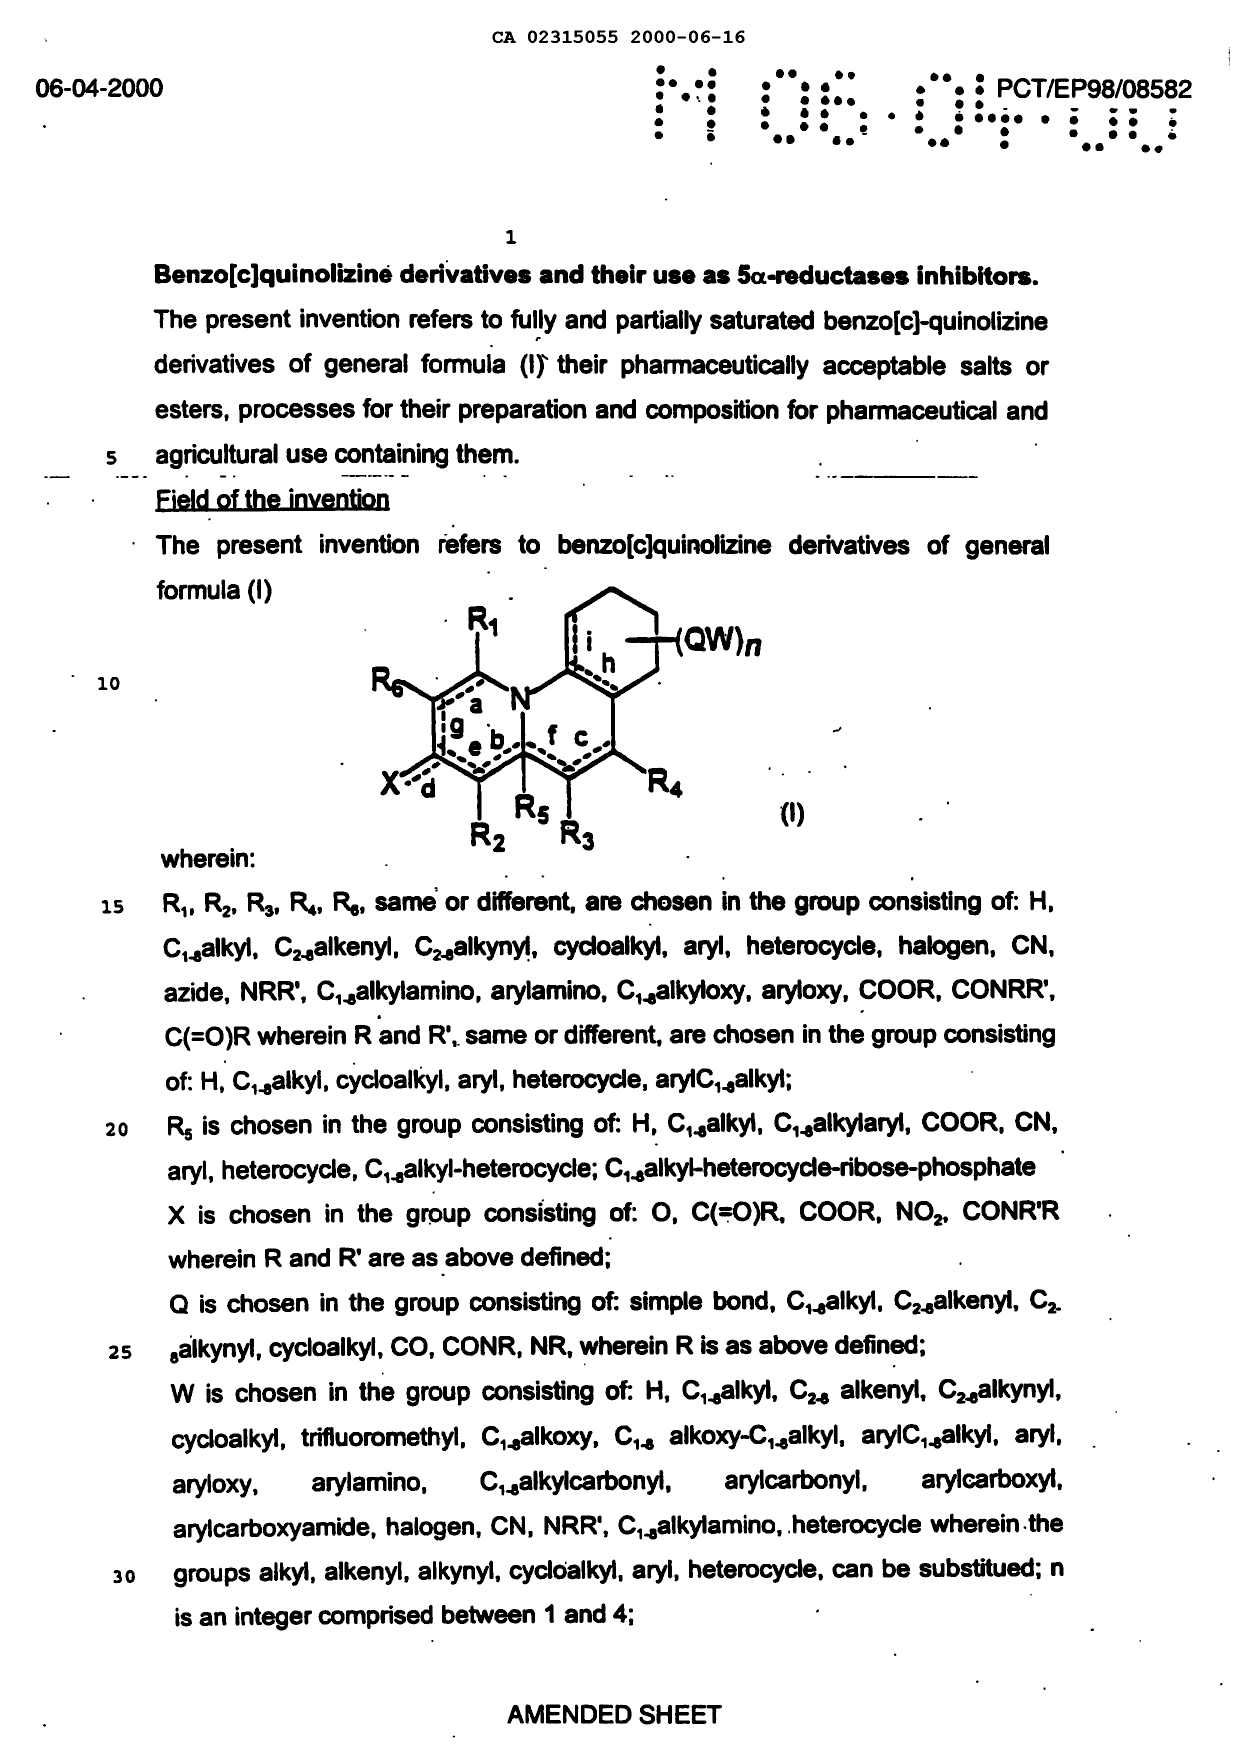 Canadian Patent Document 2315055. Description 20070305. Image 1 of 24